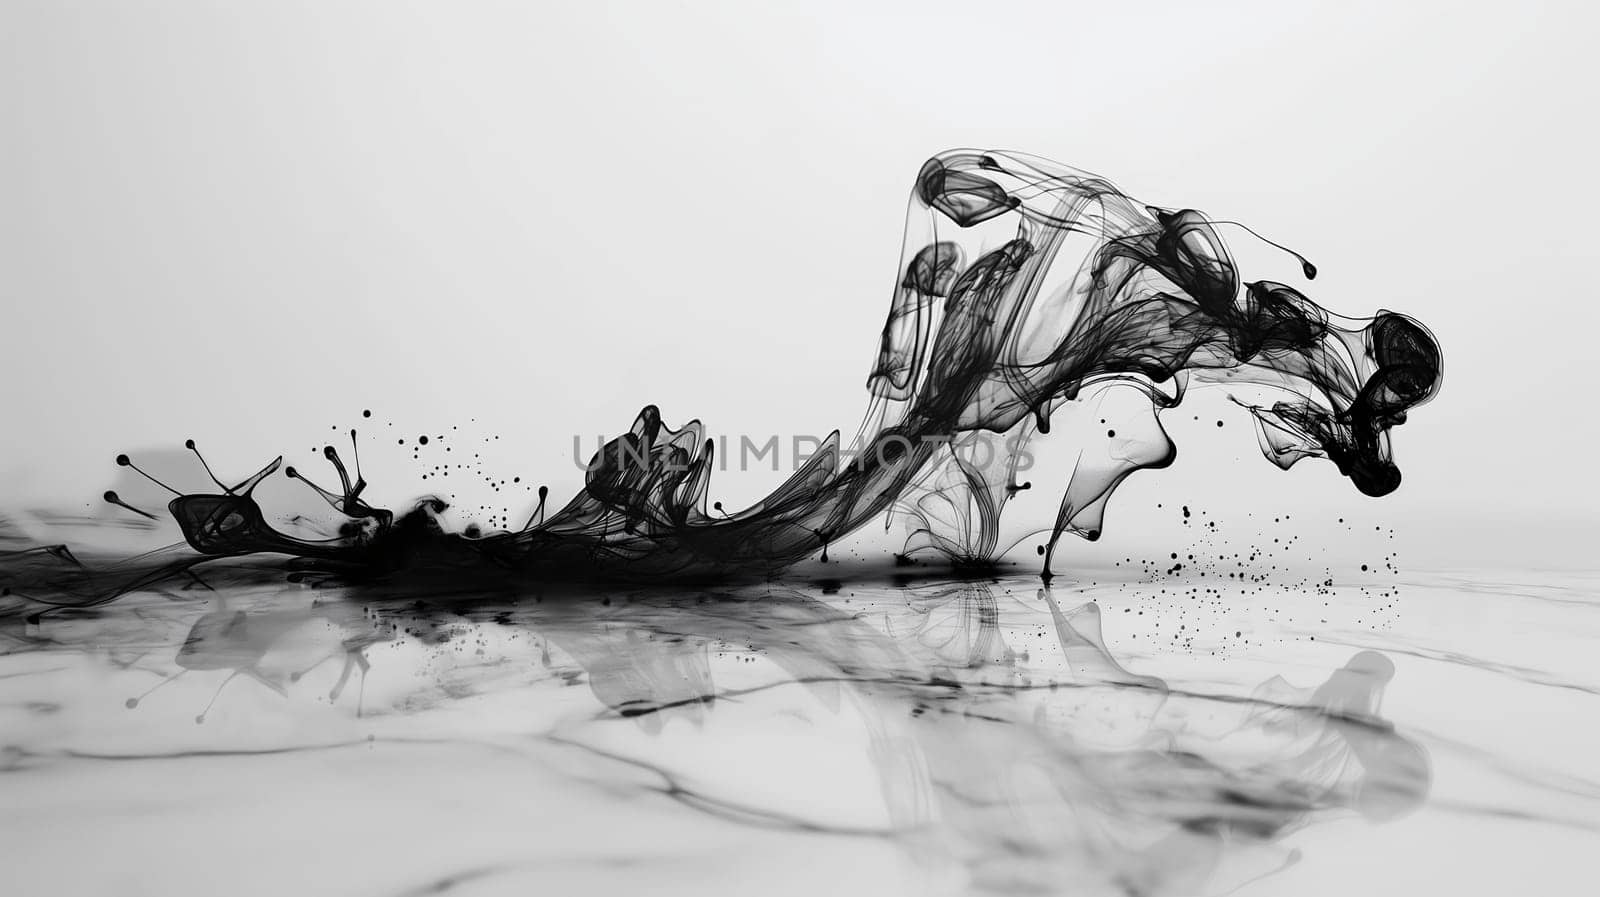 Dynamic Black Ink Splash on White Background by chrisroll